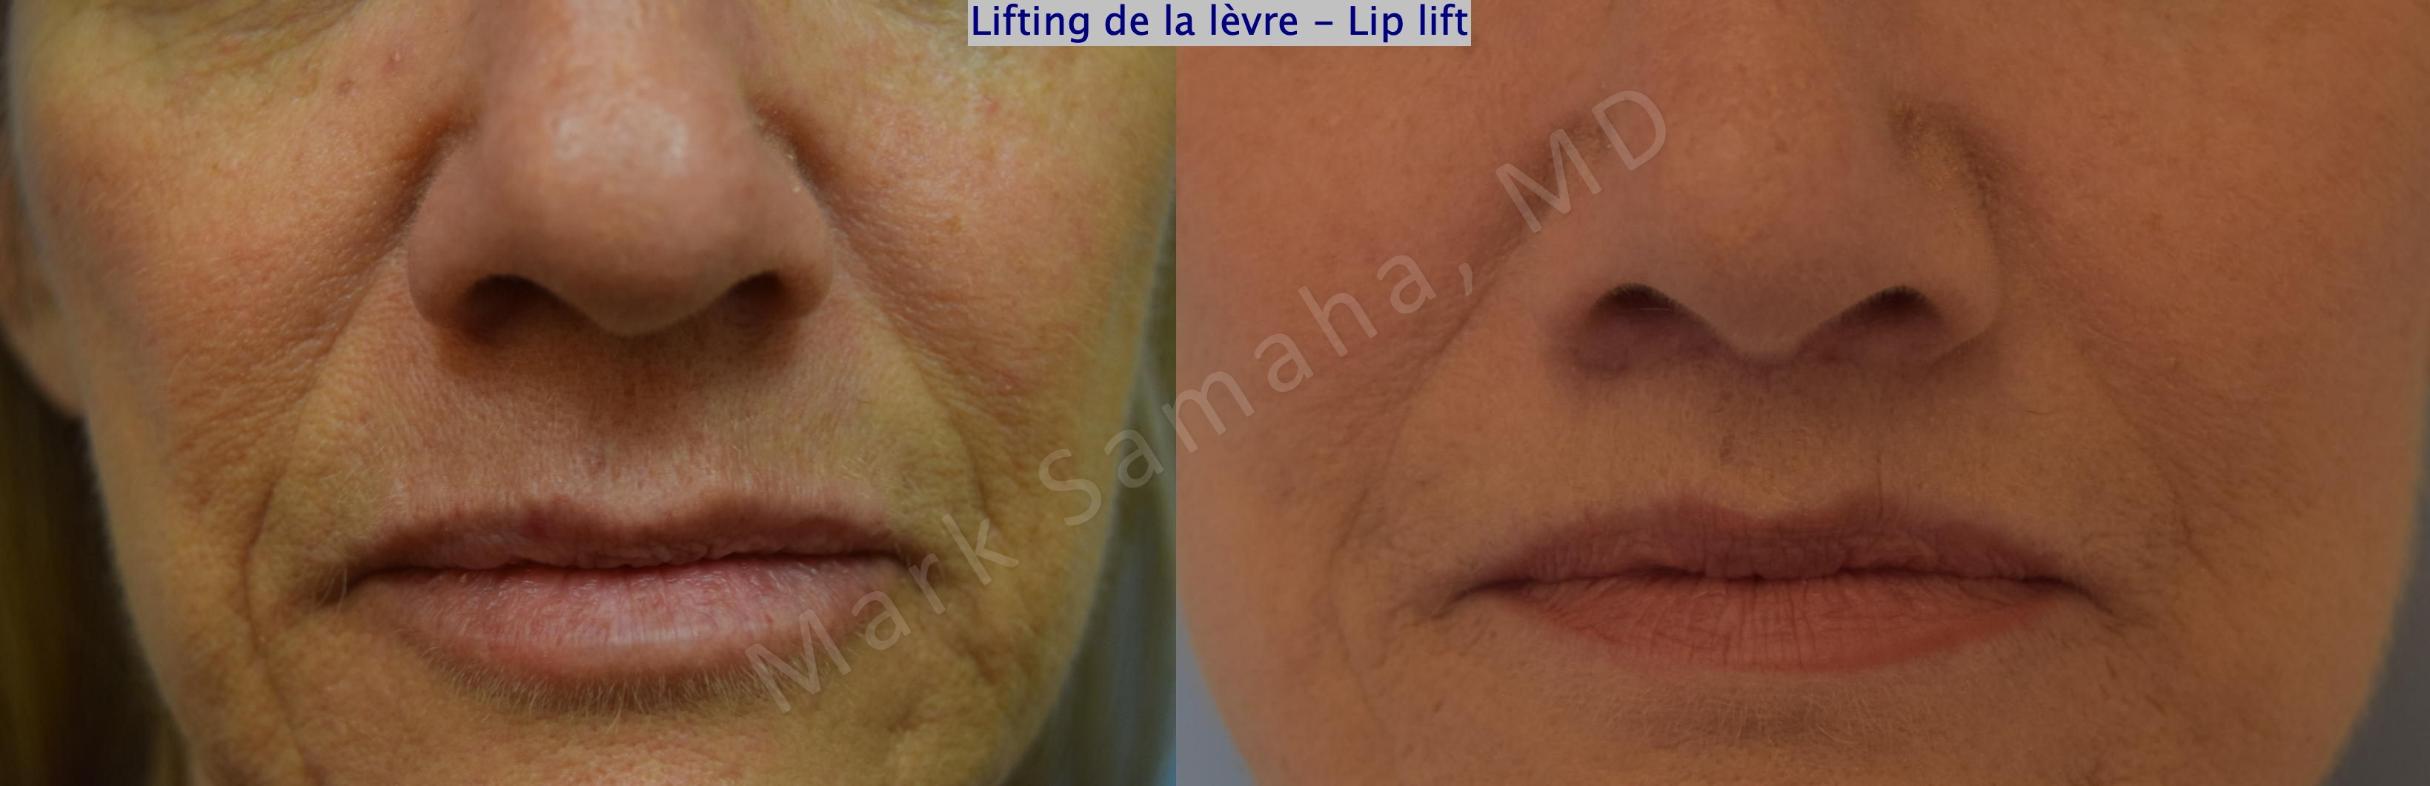 Before & After Lip Lift / Lifting de la lèvre supérieure Case 170 Front View in Mount Royal, QC